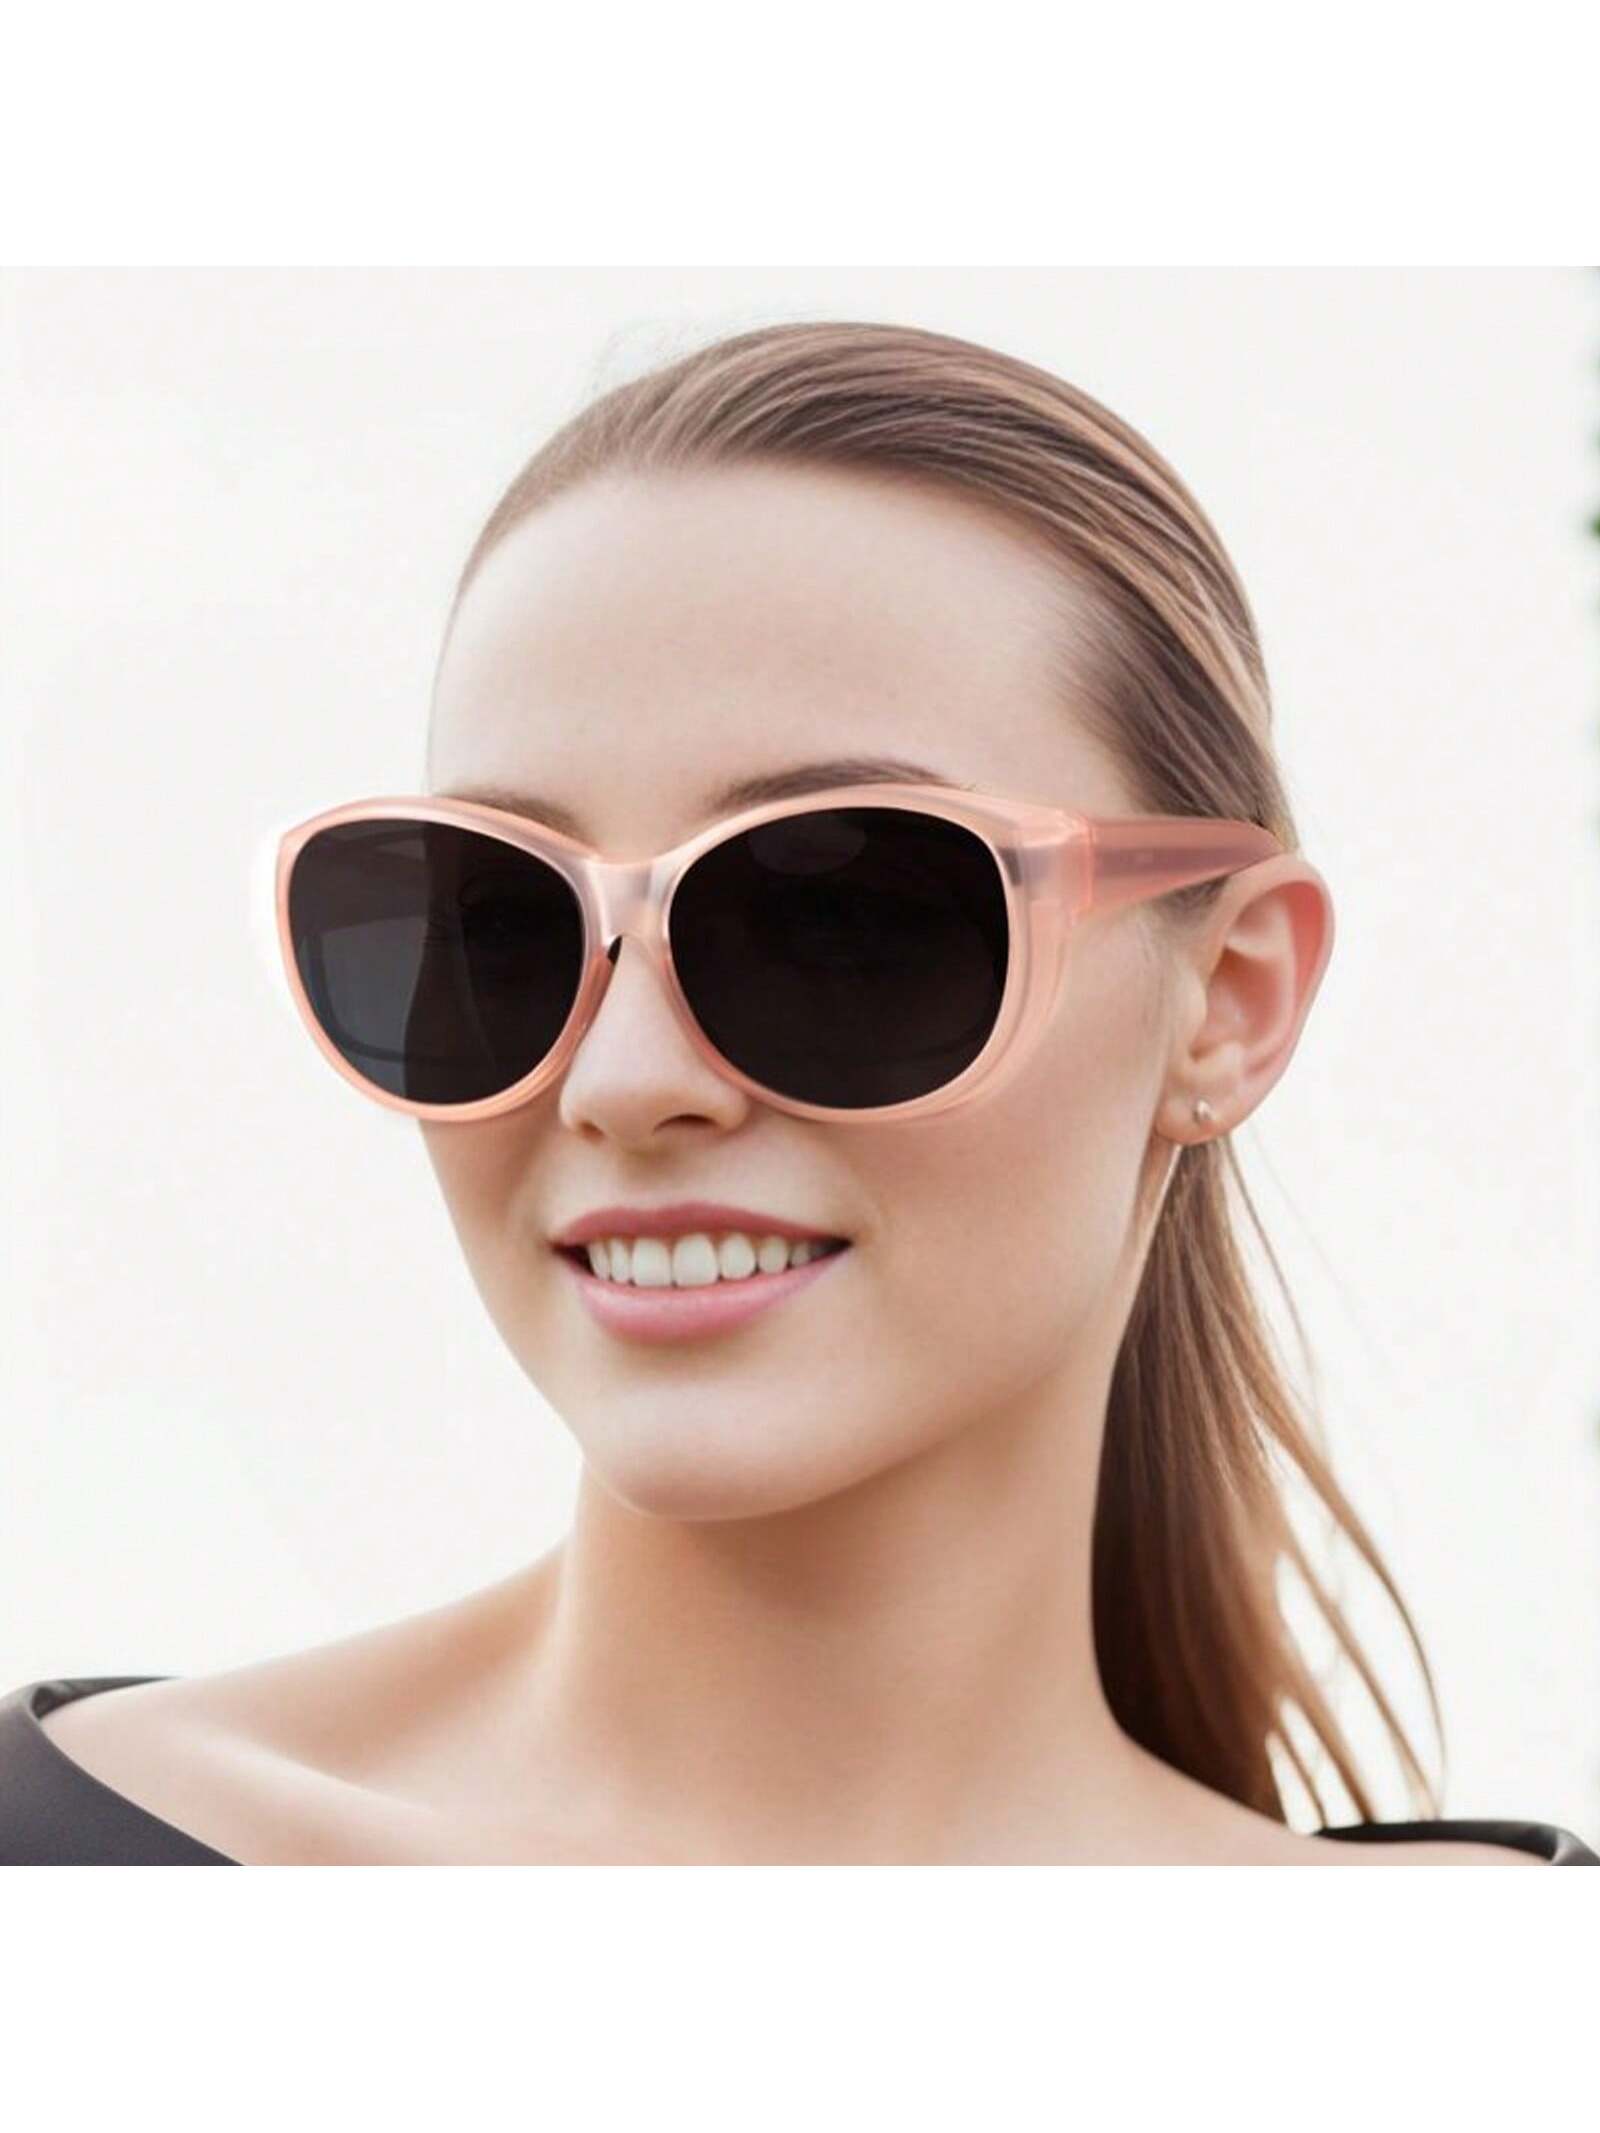 LVIOE 1 пара поляризованных солнцезащитных очков для женщин и мужчин поляризованные солнцезащитные очки lvioe для мужчин